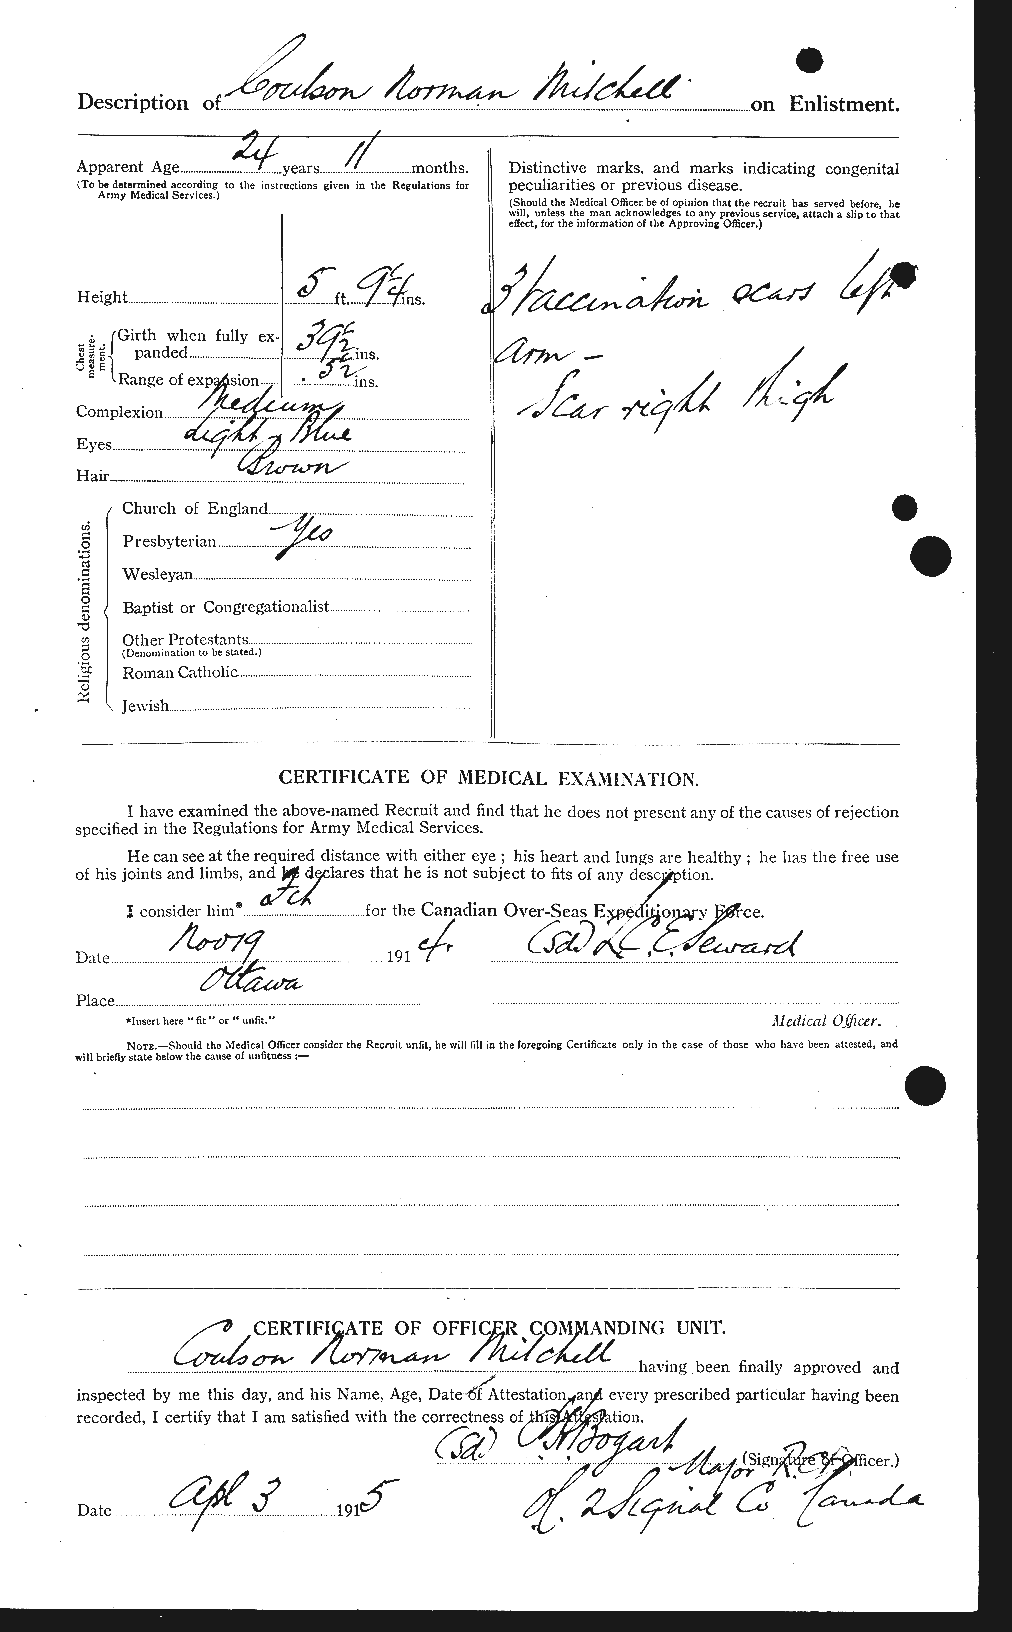 Dossiers du Personnel de la Première Guerre mondiale - CEC 496159b